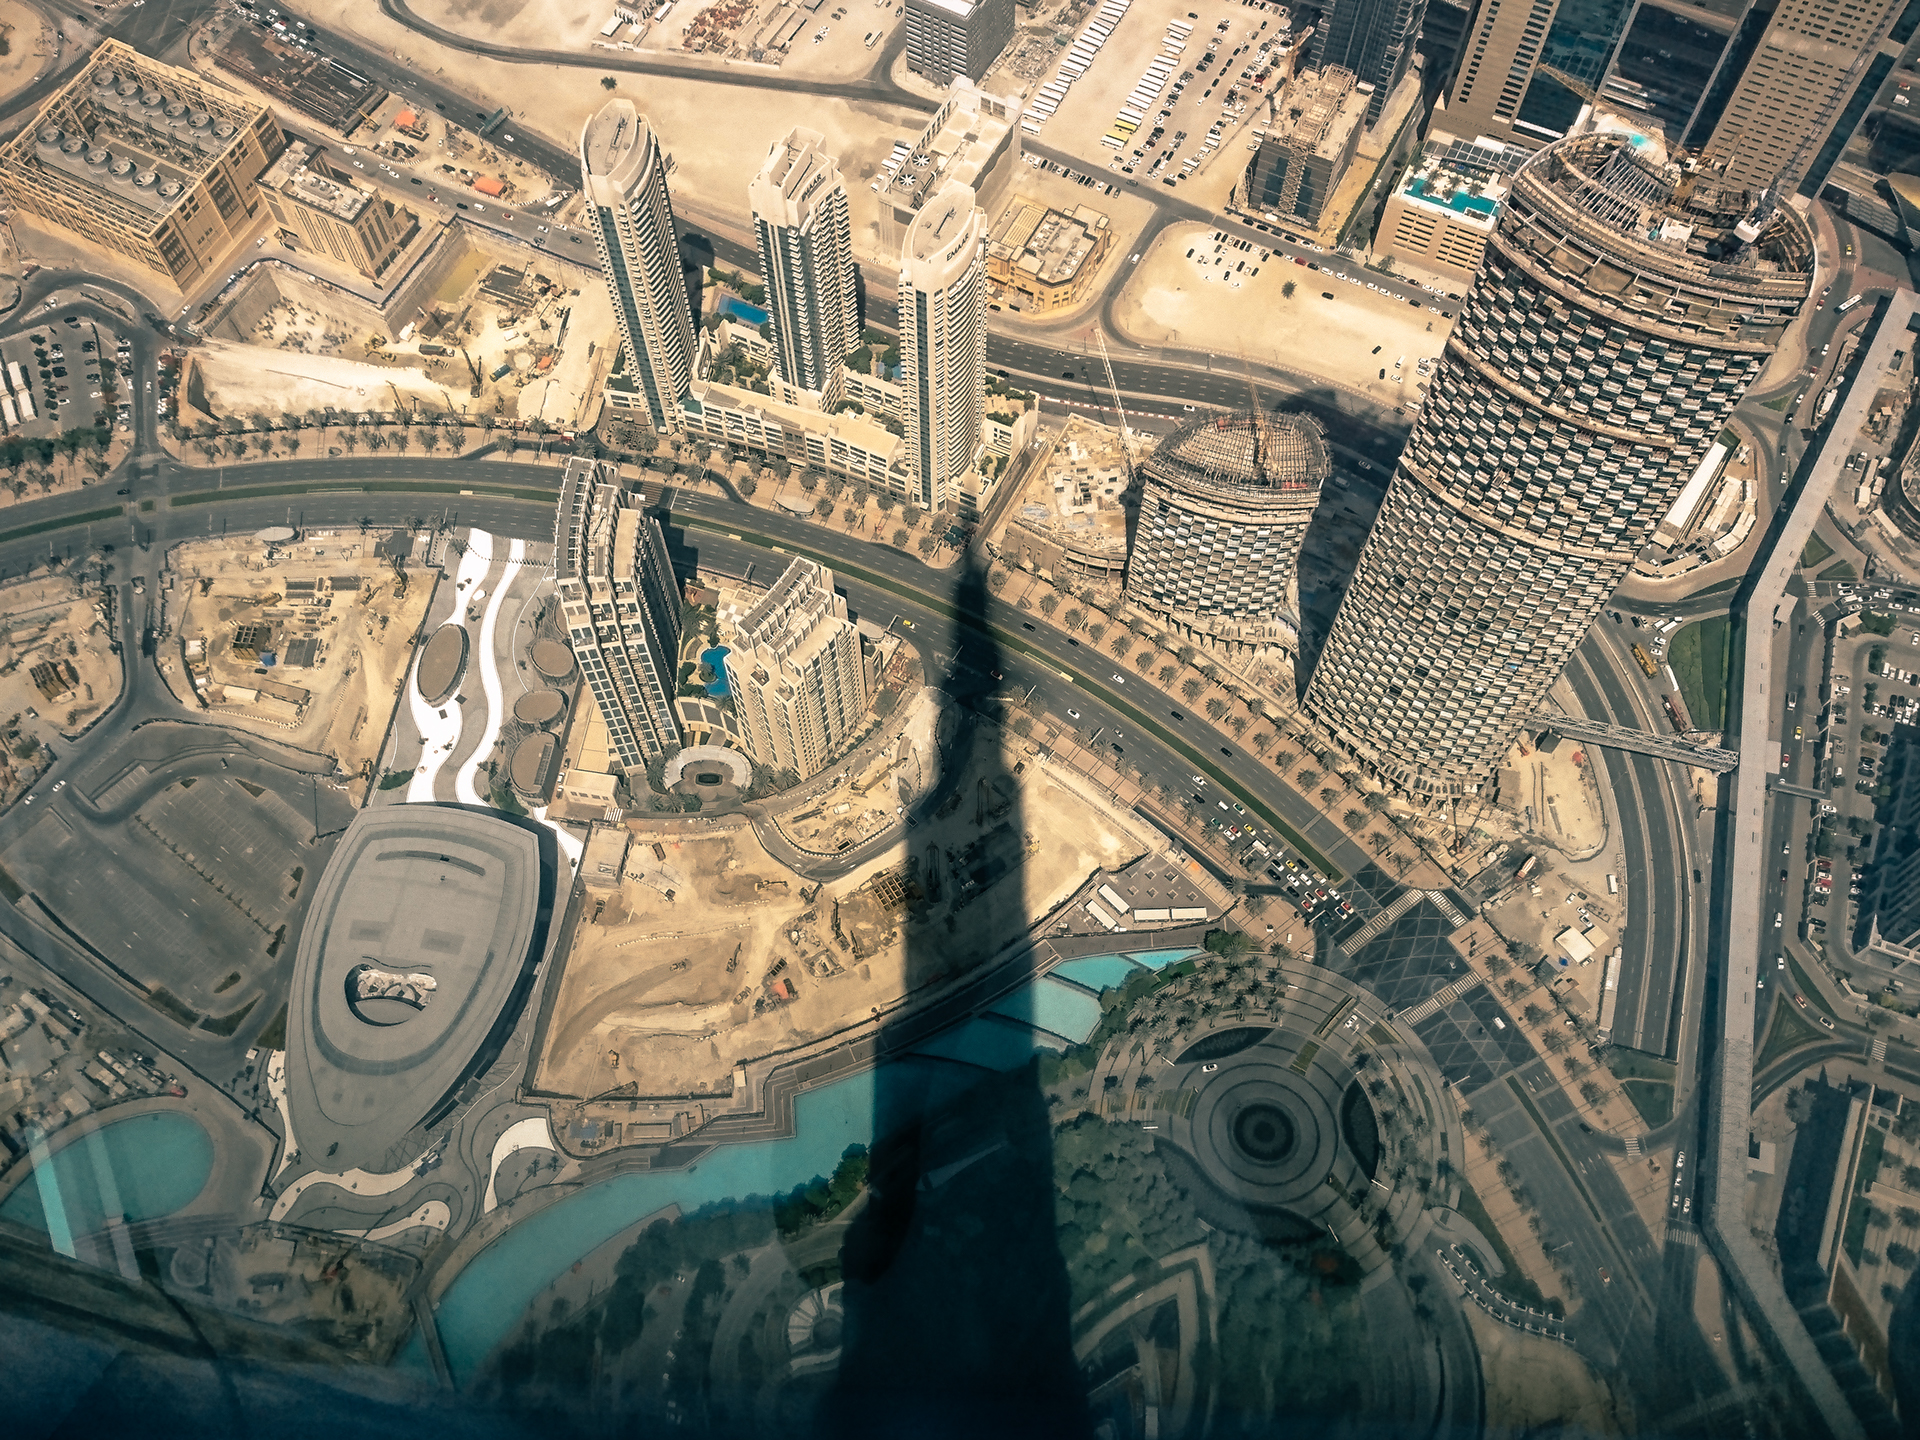 Mobile Photography: Exploring Dubai & the Burj Khalifa